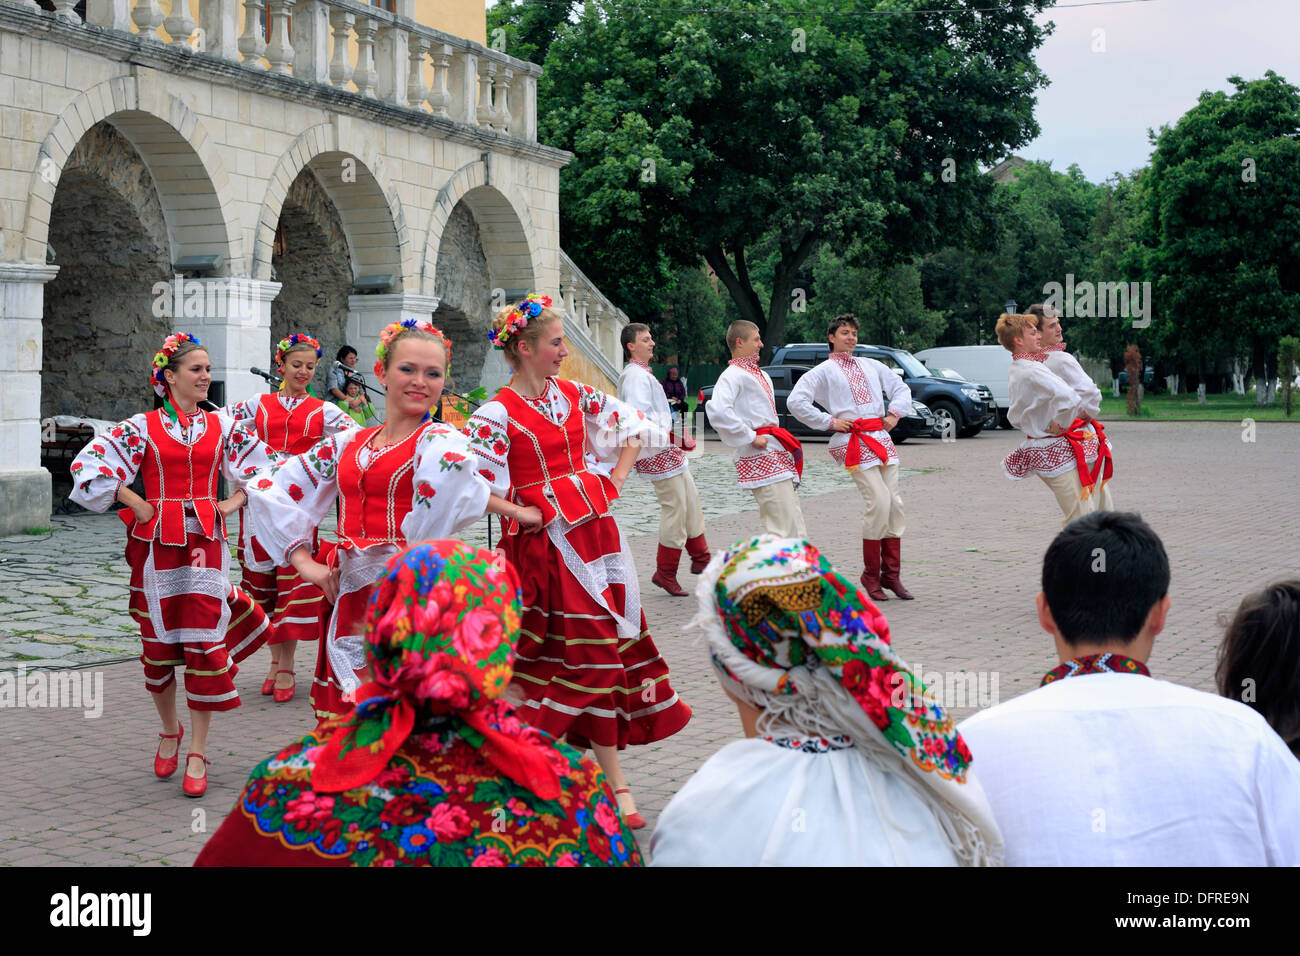 Ukranian folk festival, Kamianets-Podilskyi, Khmelnytskyi oblast (province), Ukraine Stock Photo